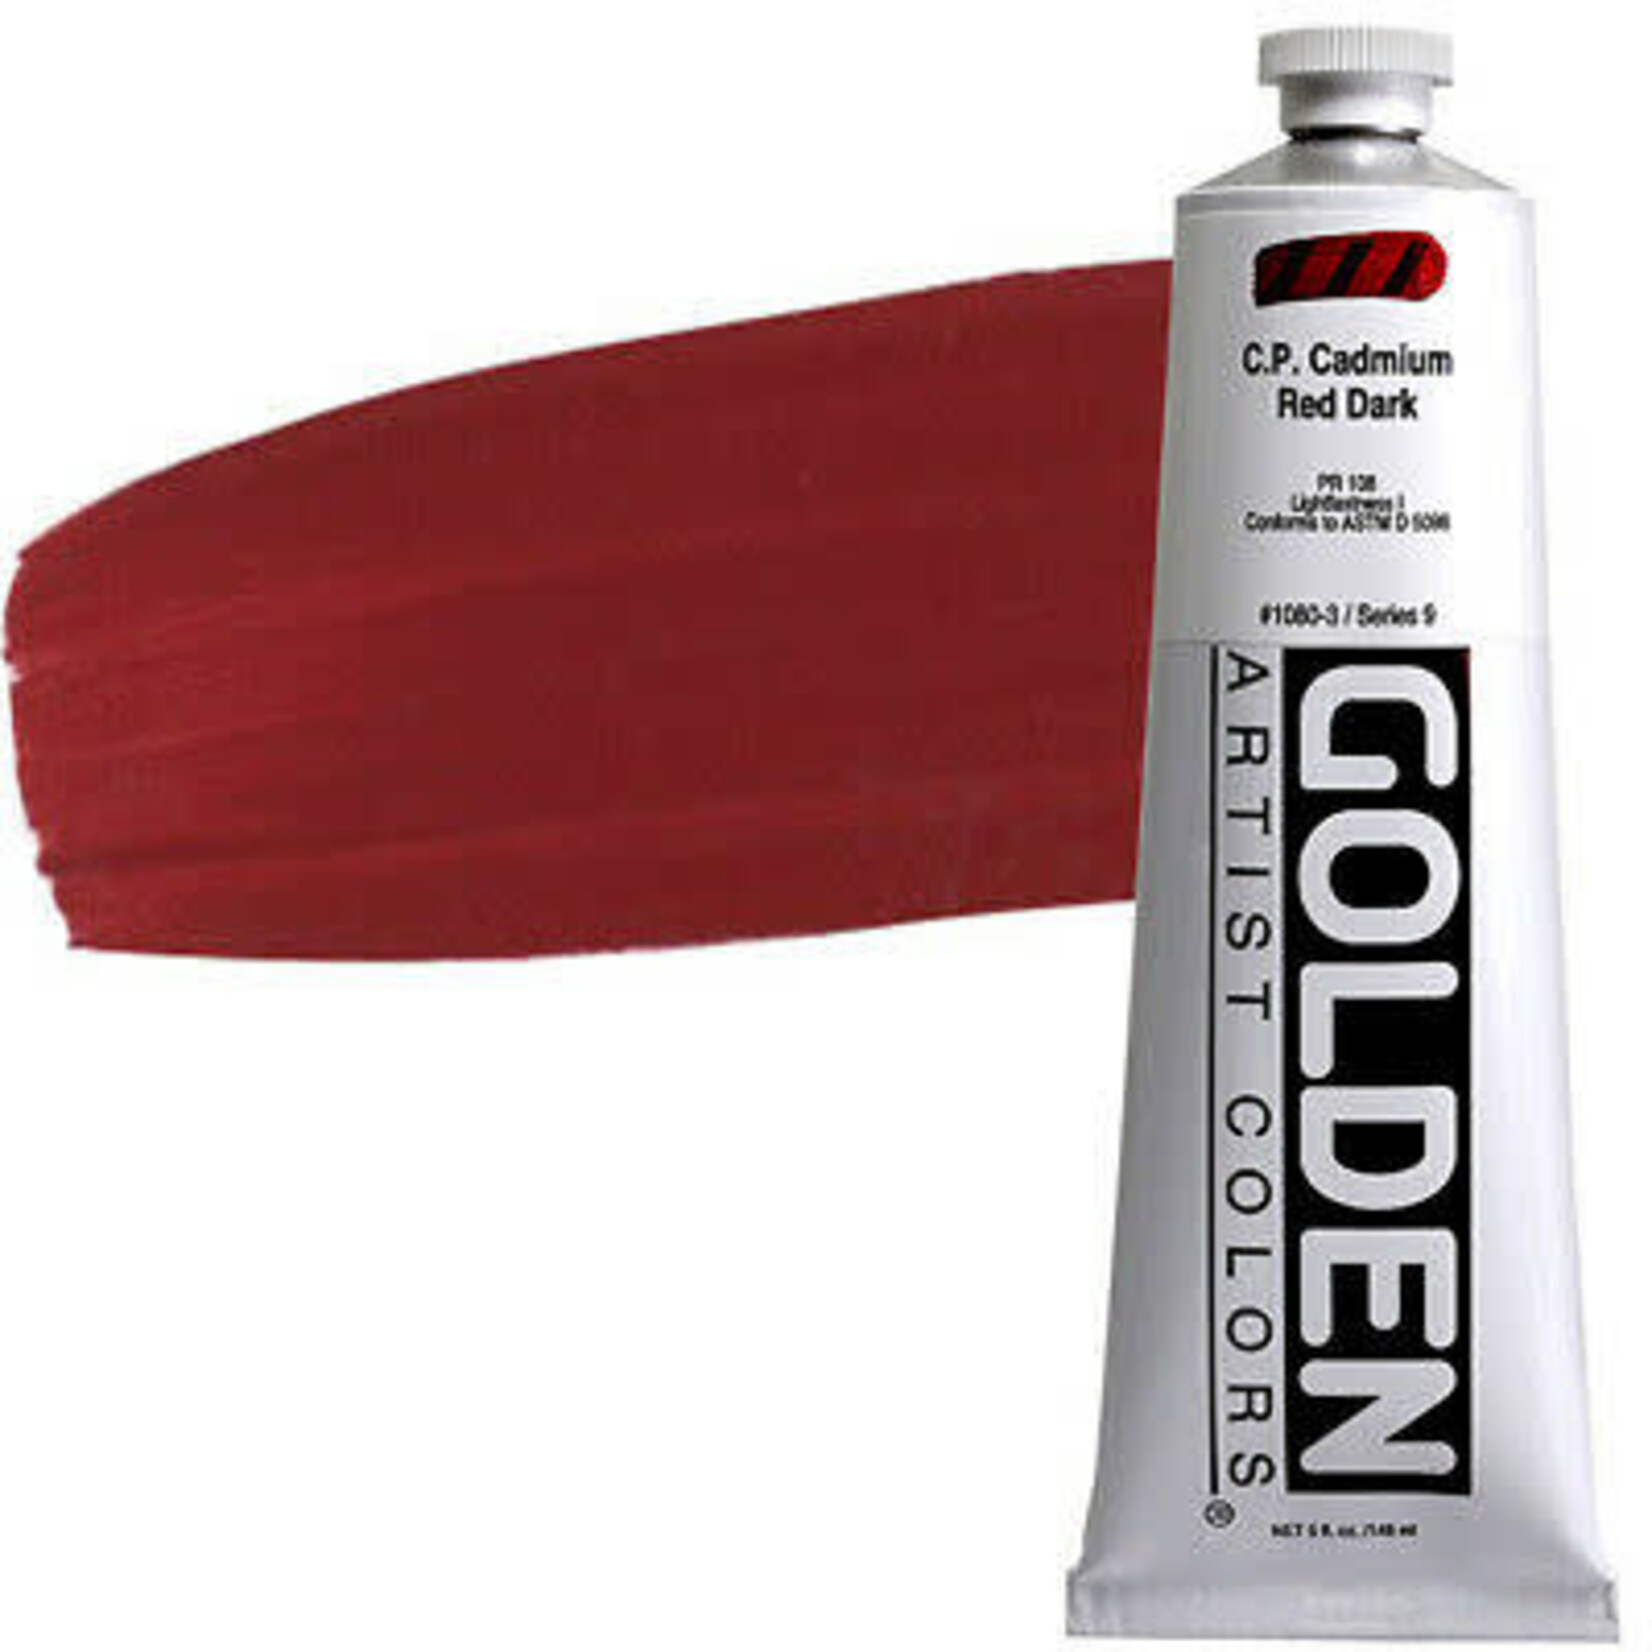 Golden HB Cadmium Red Dark 2 oz tube Series 9